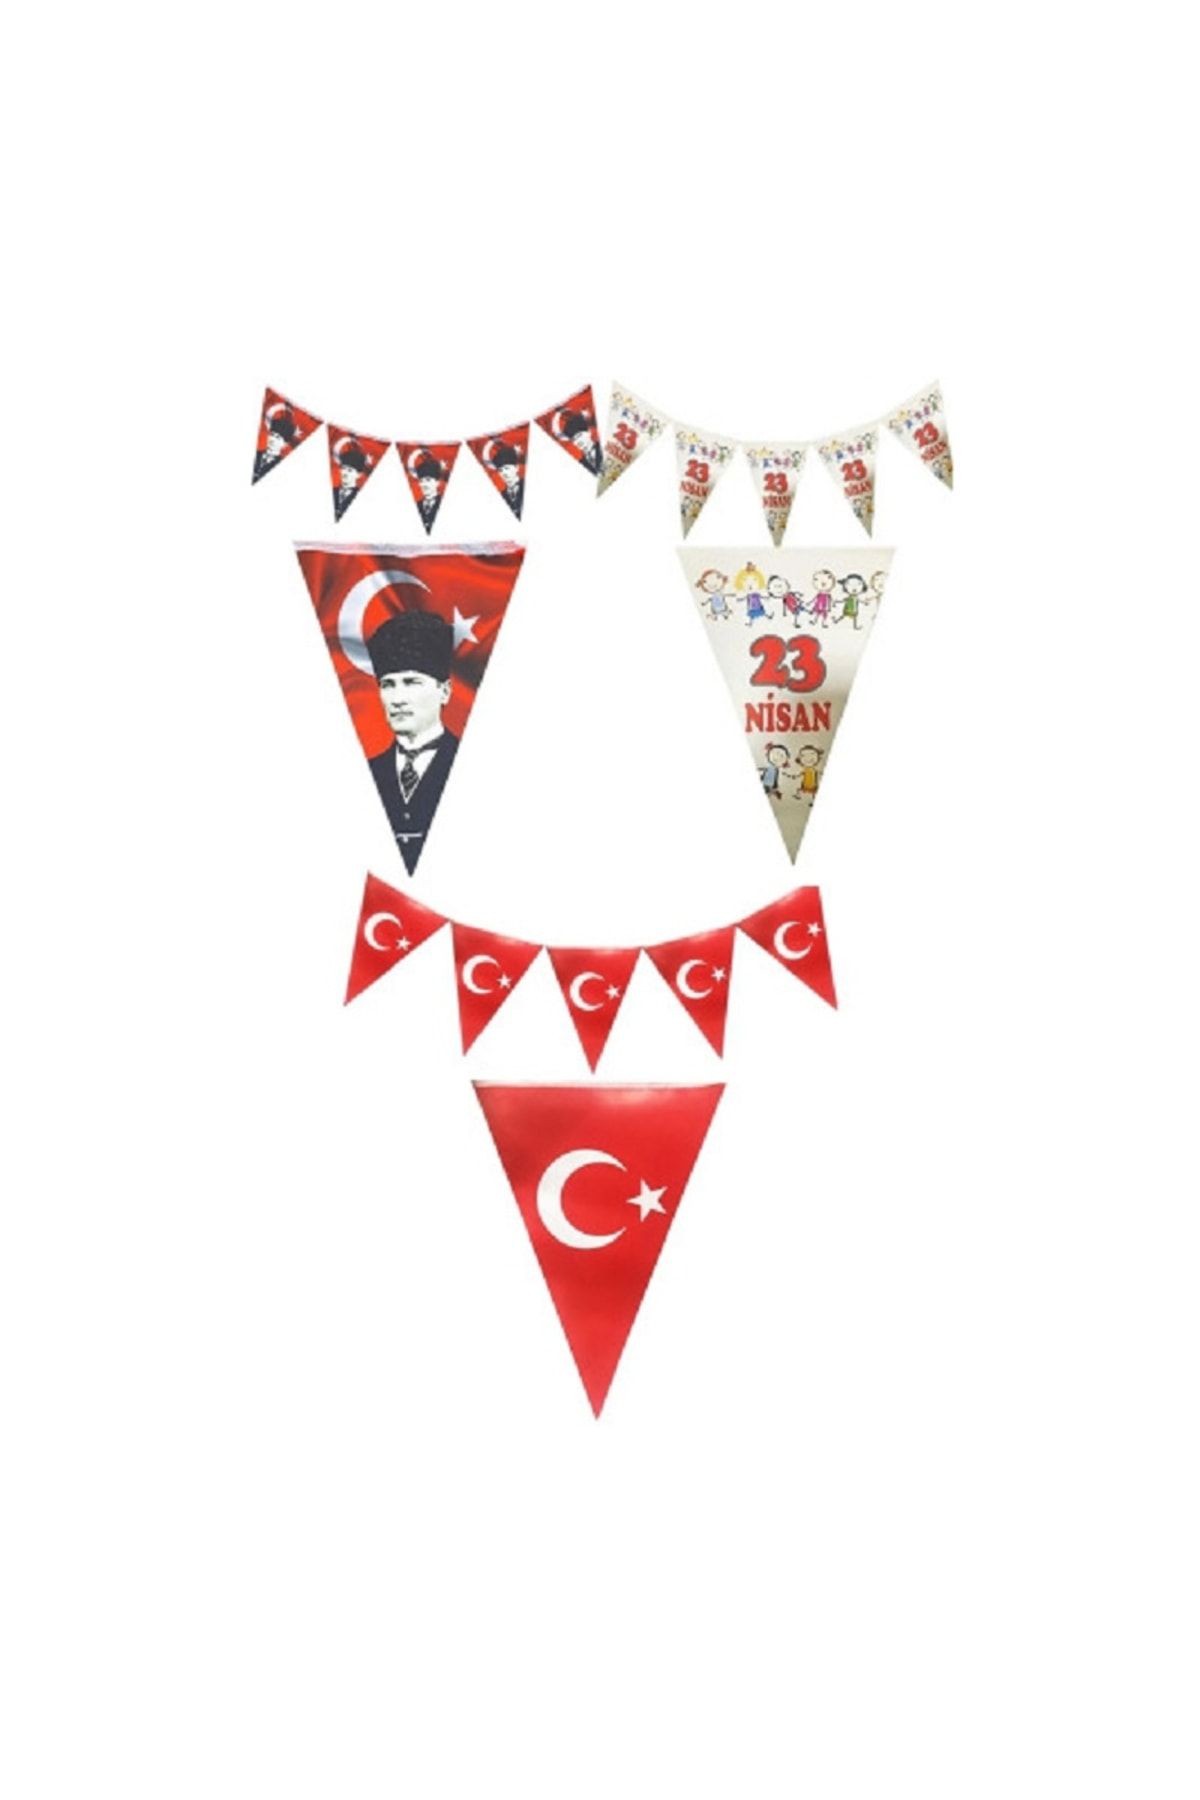 Happyland 3lü Flama Set - 23 Nisan Flama, 29 Ekim Atatürk Baskılı, Türk Bayrağı Baskılı Bayrak Kağıt